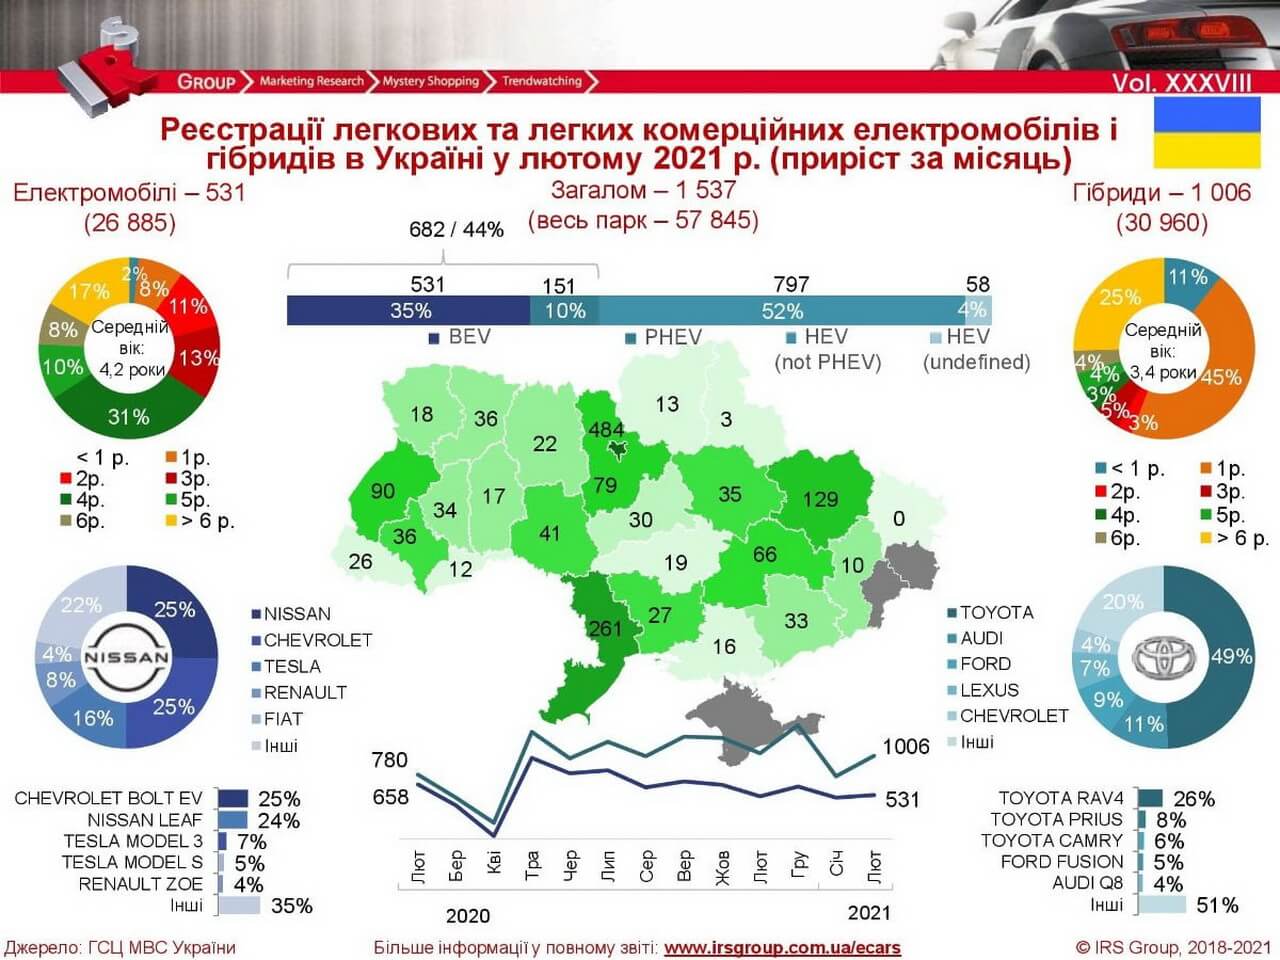 Количество зарегистрированных электрических и гибридных автомобилей в Украине на 01.03.2021 года